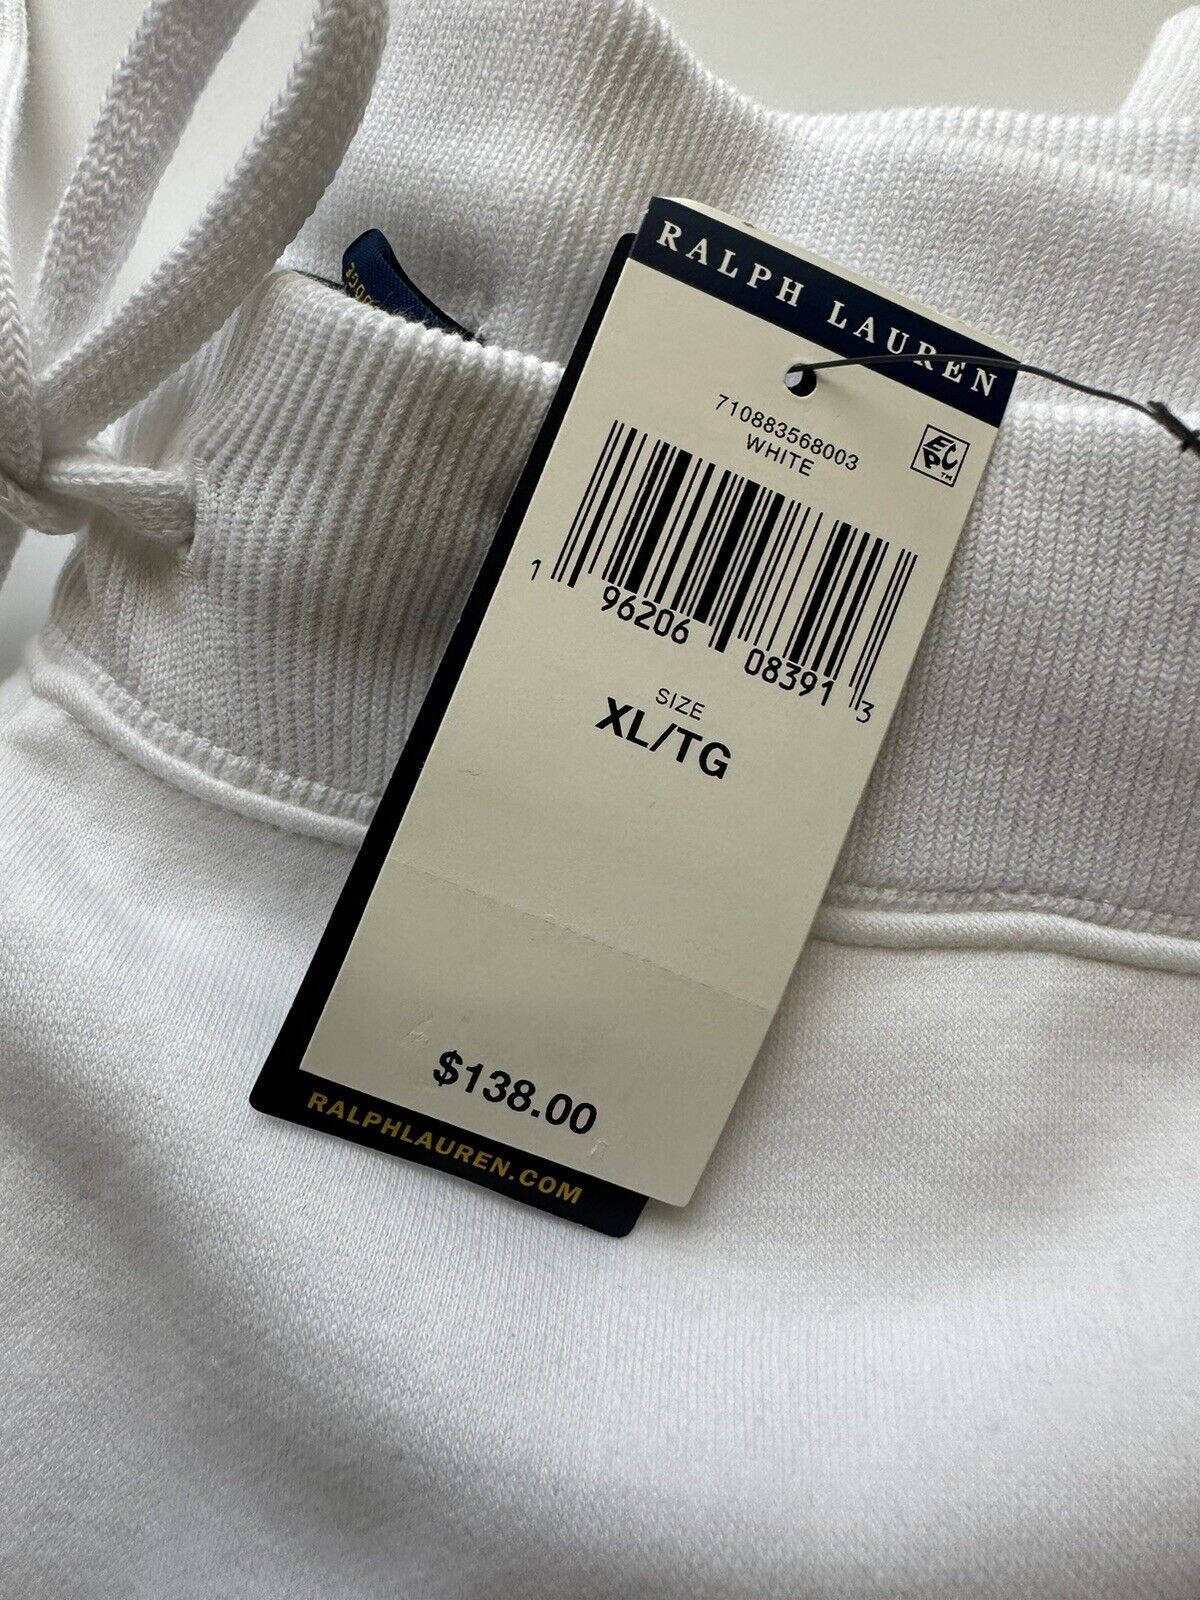 СЗТ $138 Polo Ralph Lauren Мужские белые повседневные спортивные штаны с логотипом XL/TG